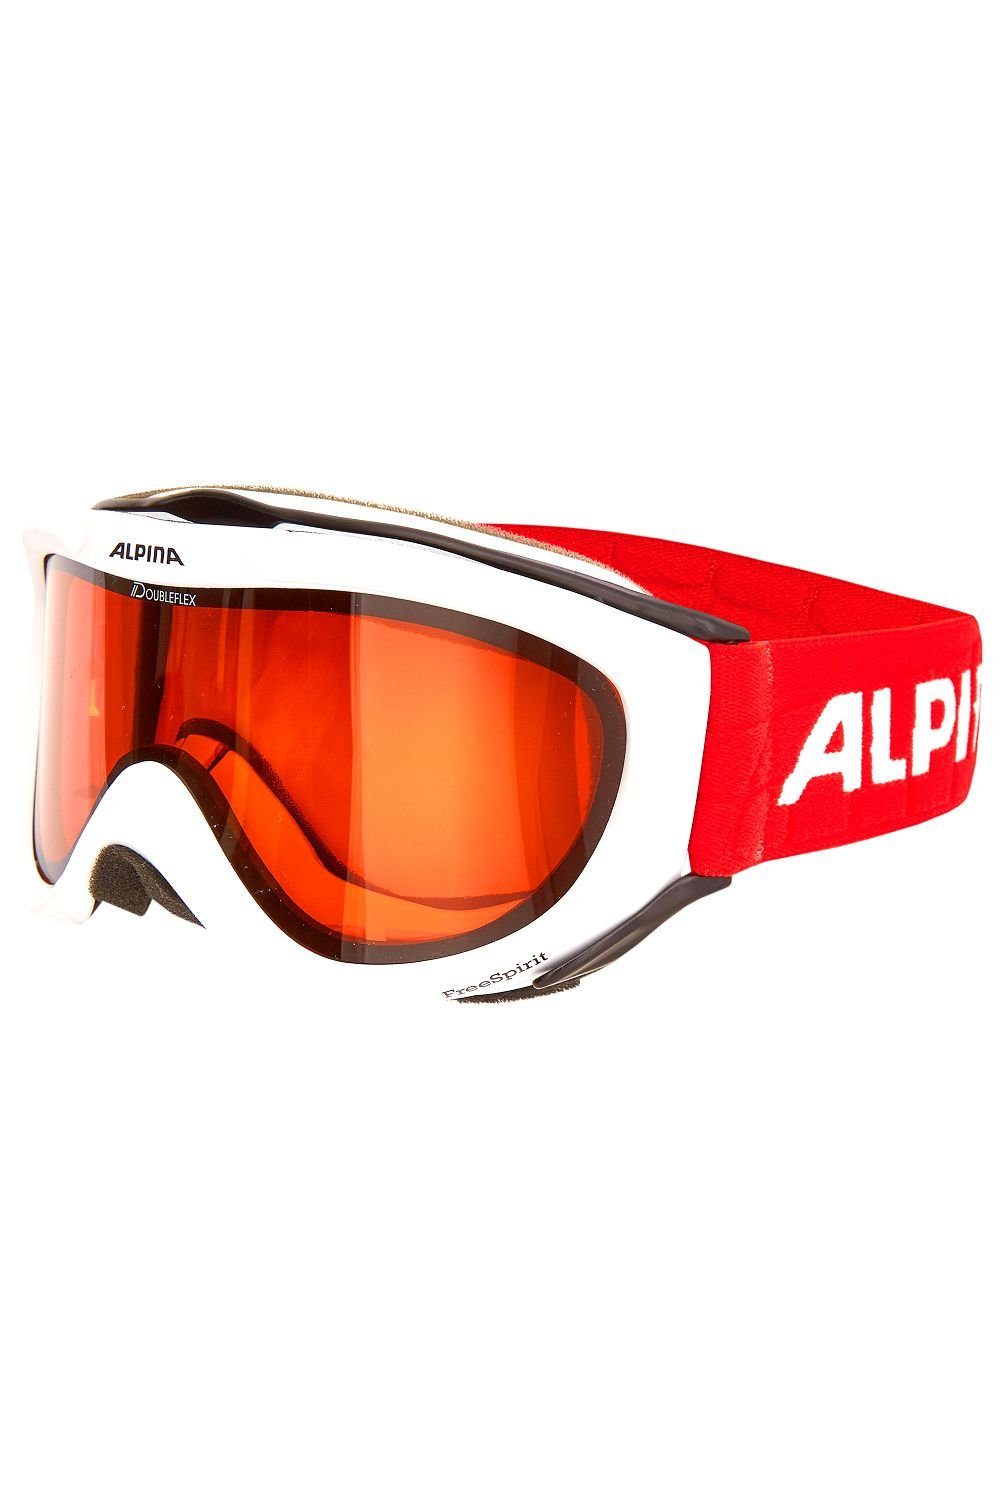 Sports Alpina DH Alpina Skibrille weiß/rot onesize Skibrille FREESPIRIT